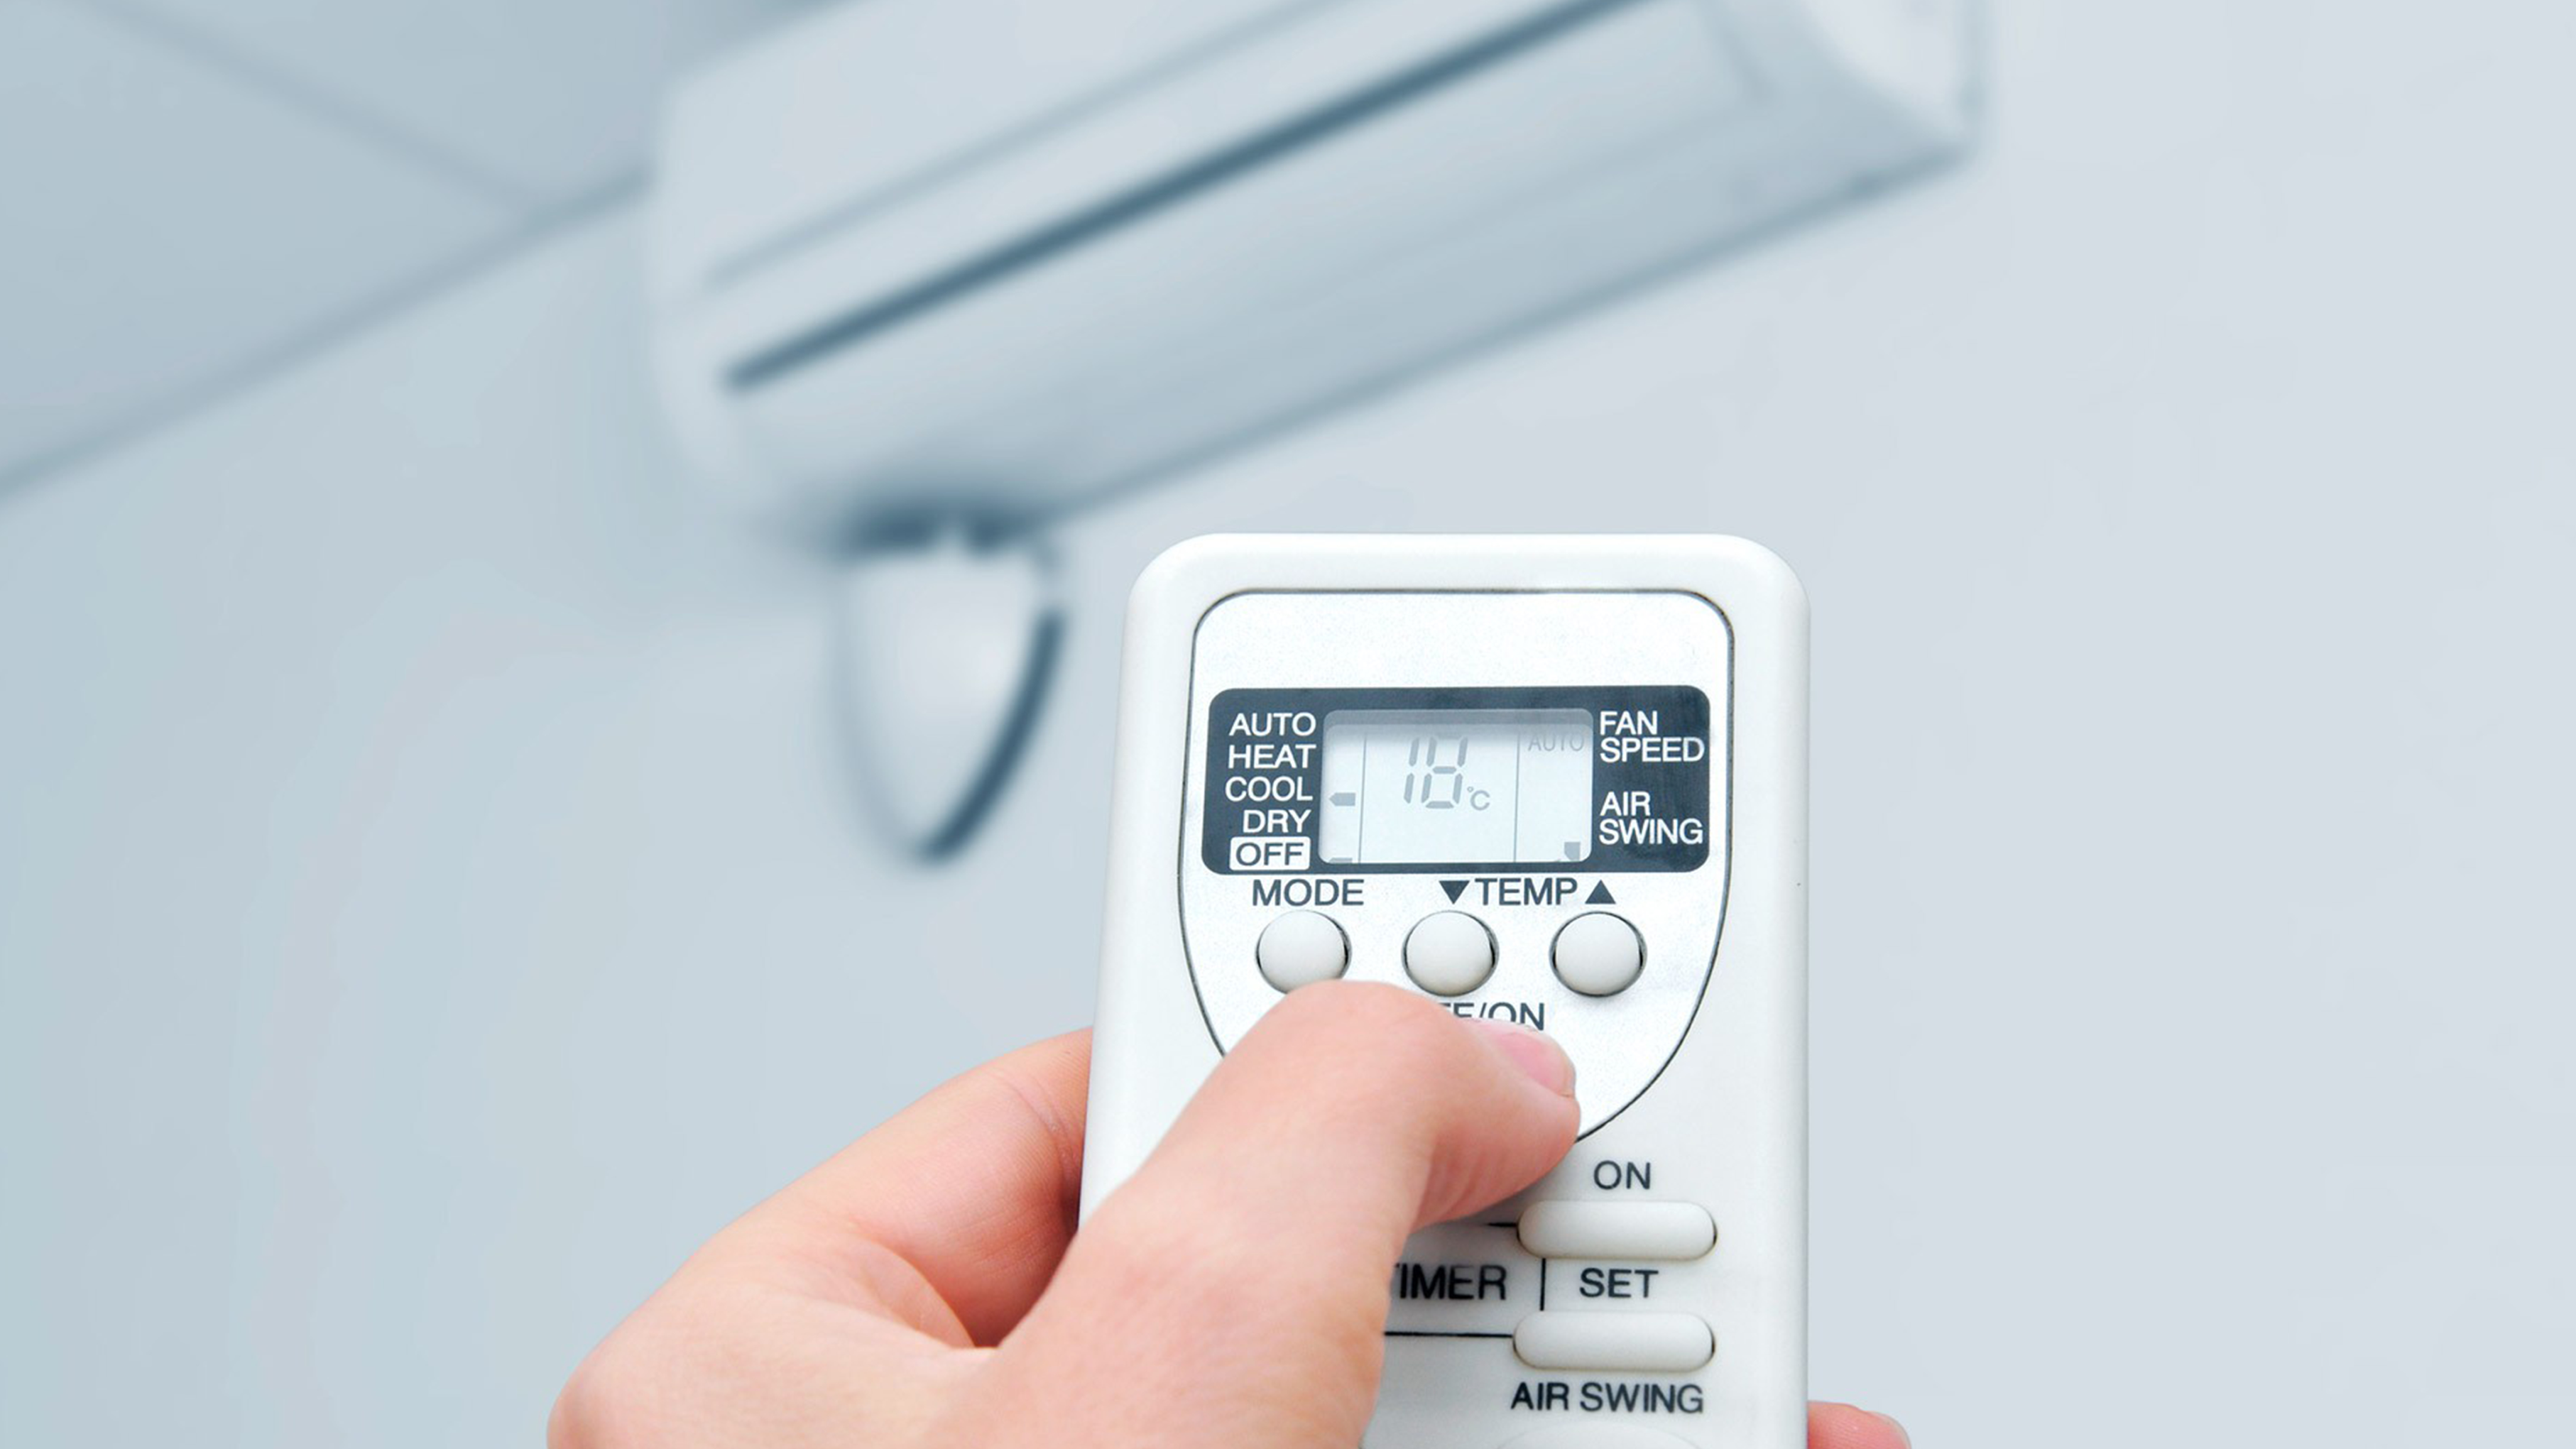 Quais as principais funções do controle remoto do ar condicionado?